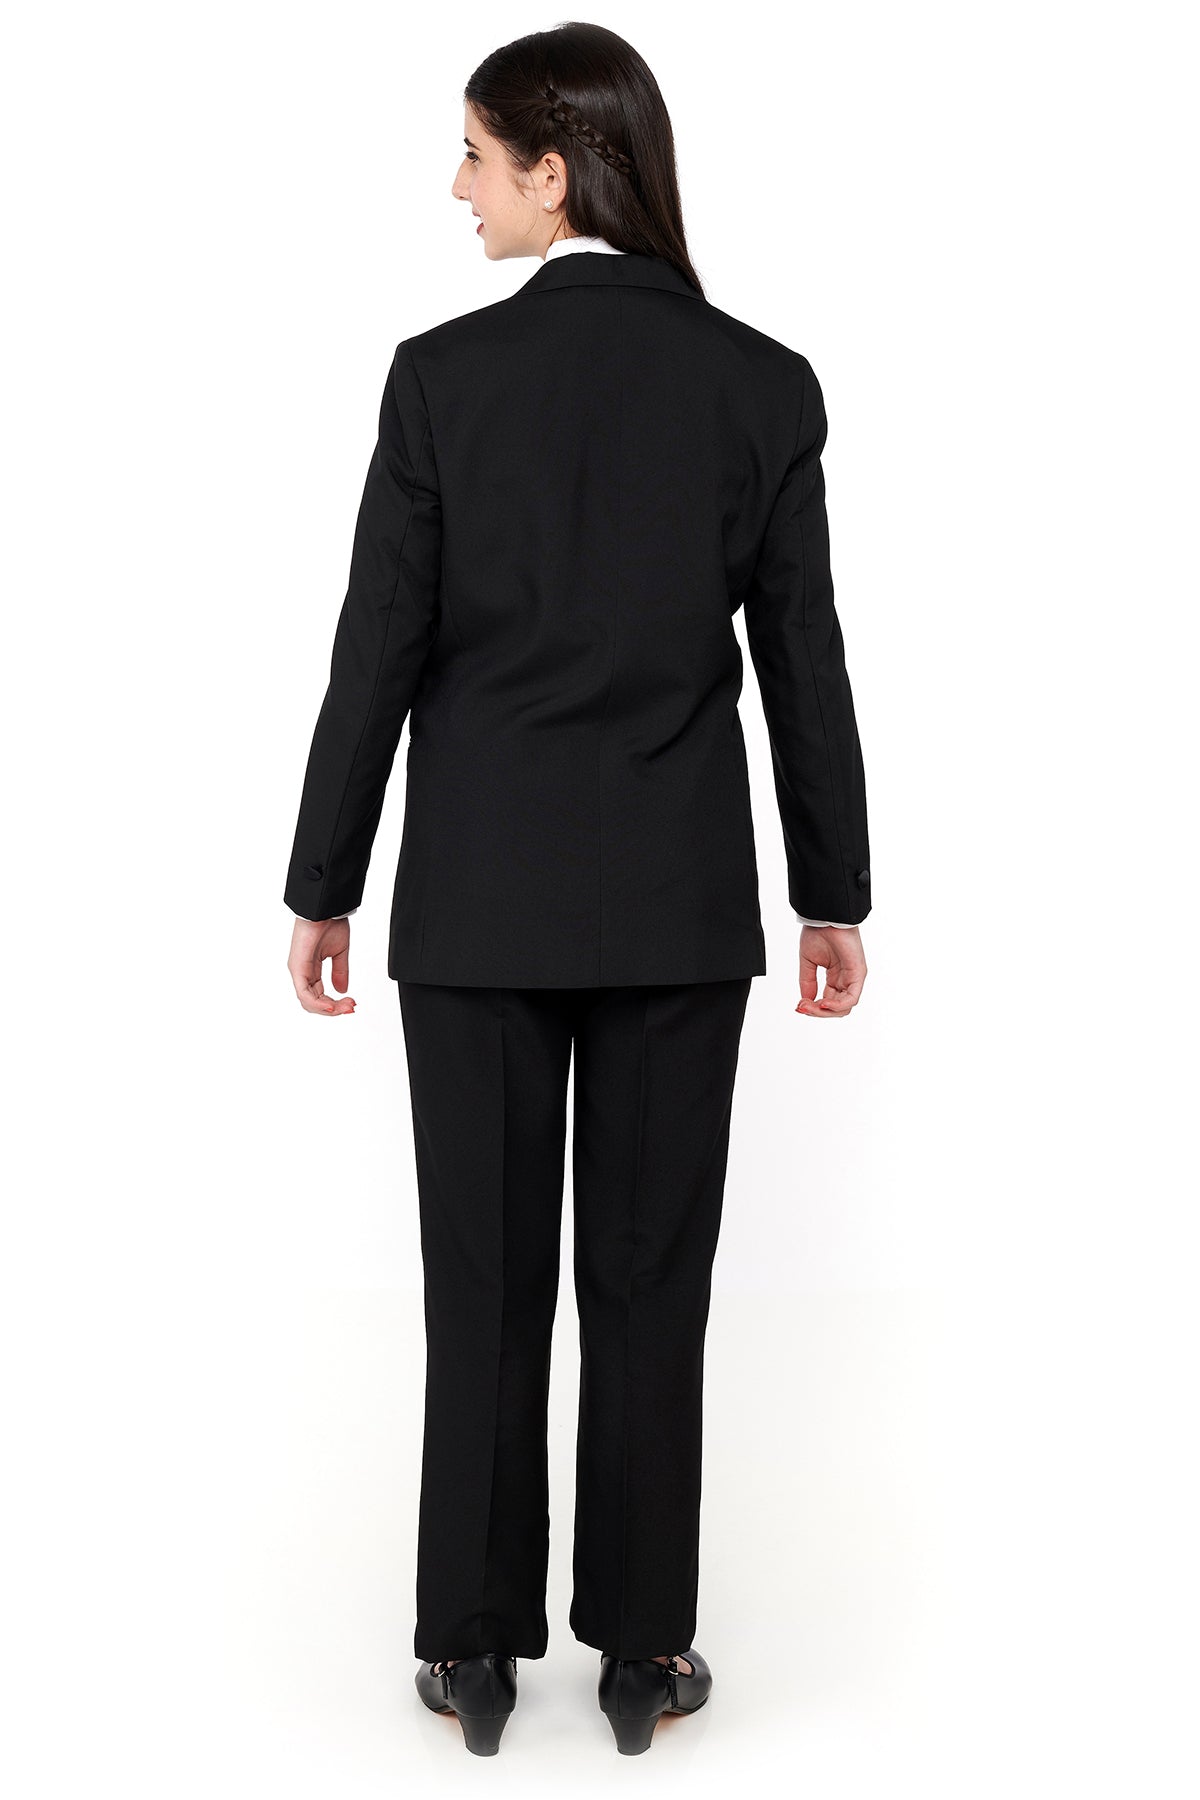 NEW! EVAN LADIES (Style #3004L) - Ladies Long Tie Tuxedo Package